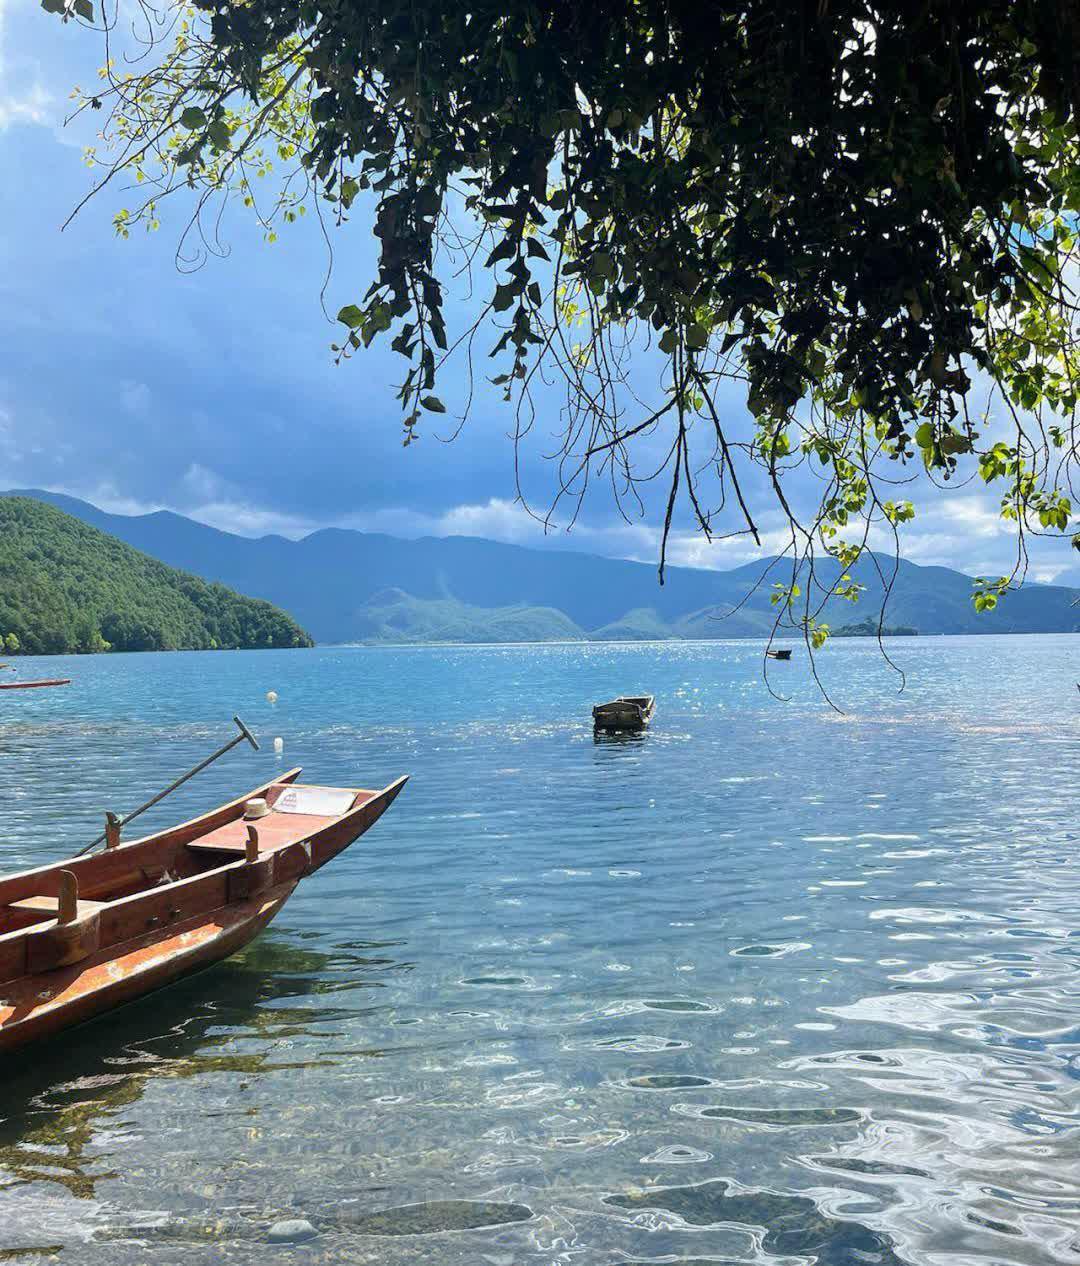 泸沽湖,中国最深的淡水湖 泸沽湖,坐落于云南省和四川省交界处的丽江